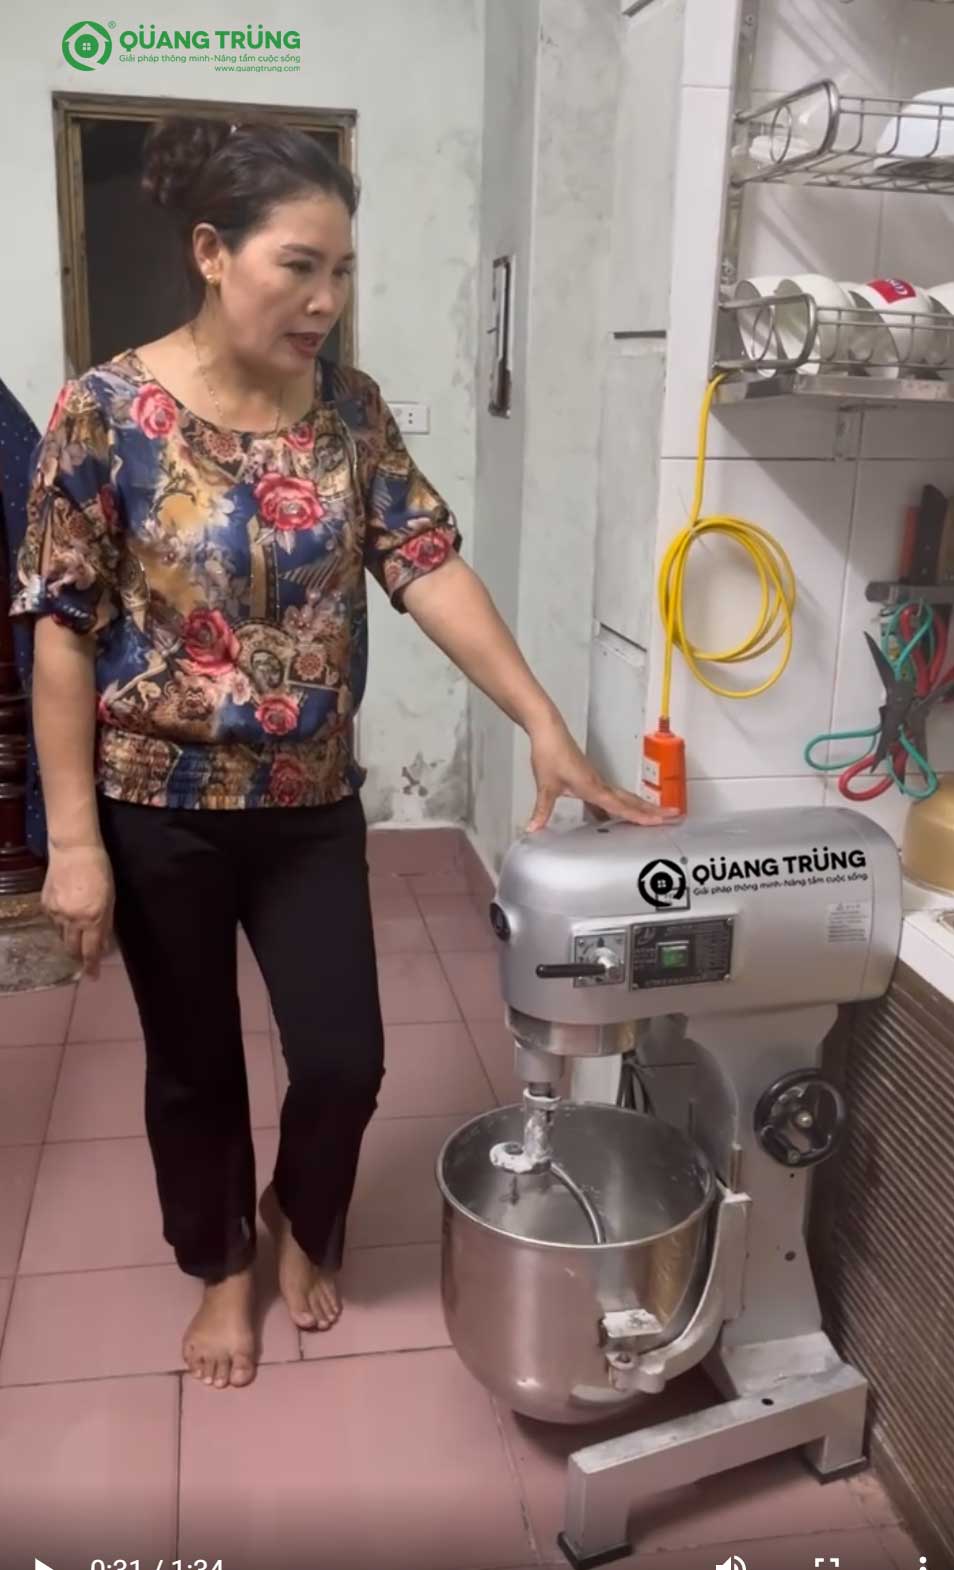 Lời nhận xét mộc mạc của cô Ngà về máy trộn bột B20 của siêu thị máy thực phẩm Quang Trung